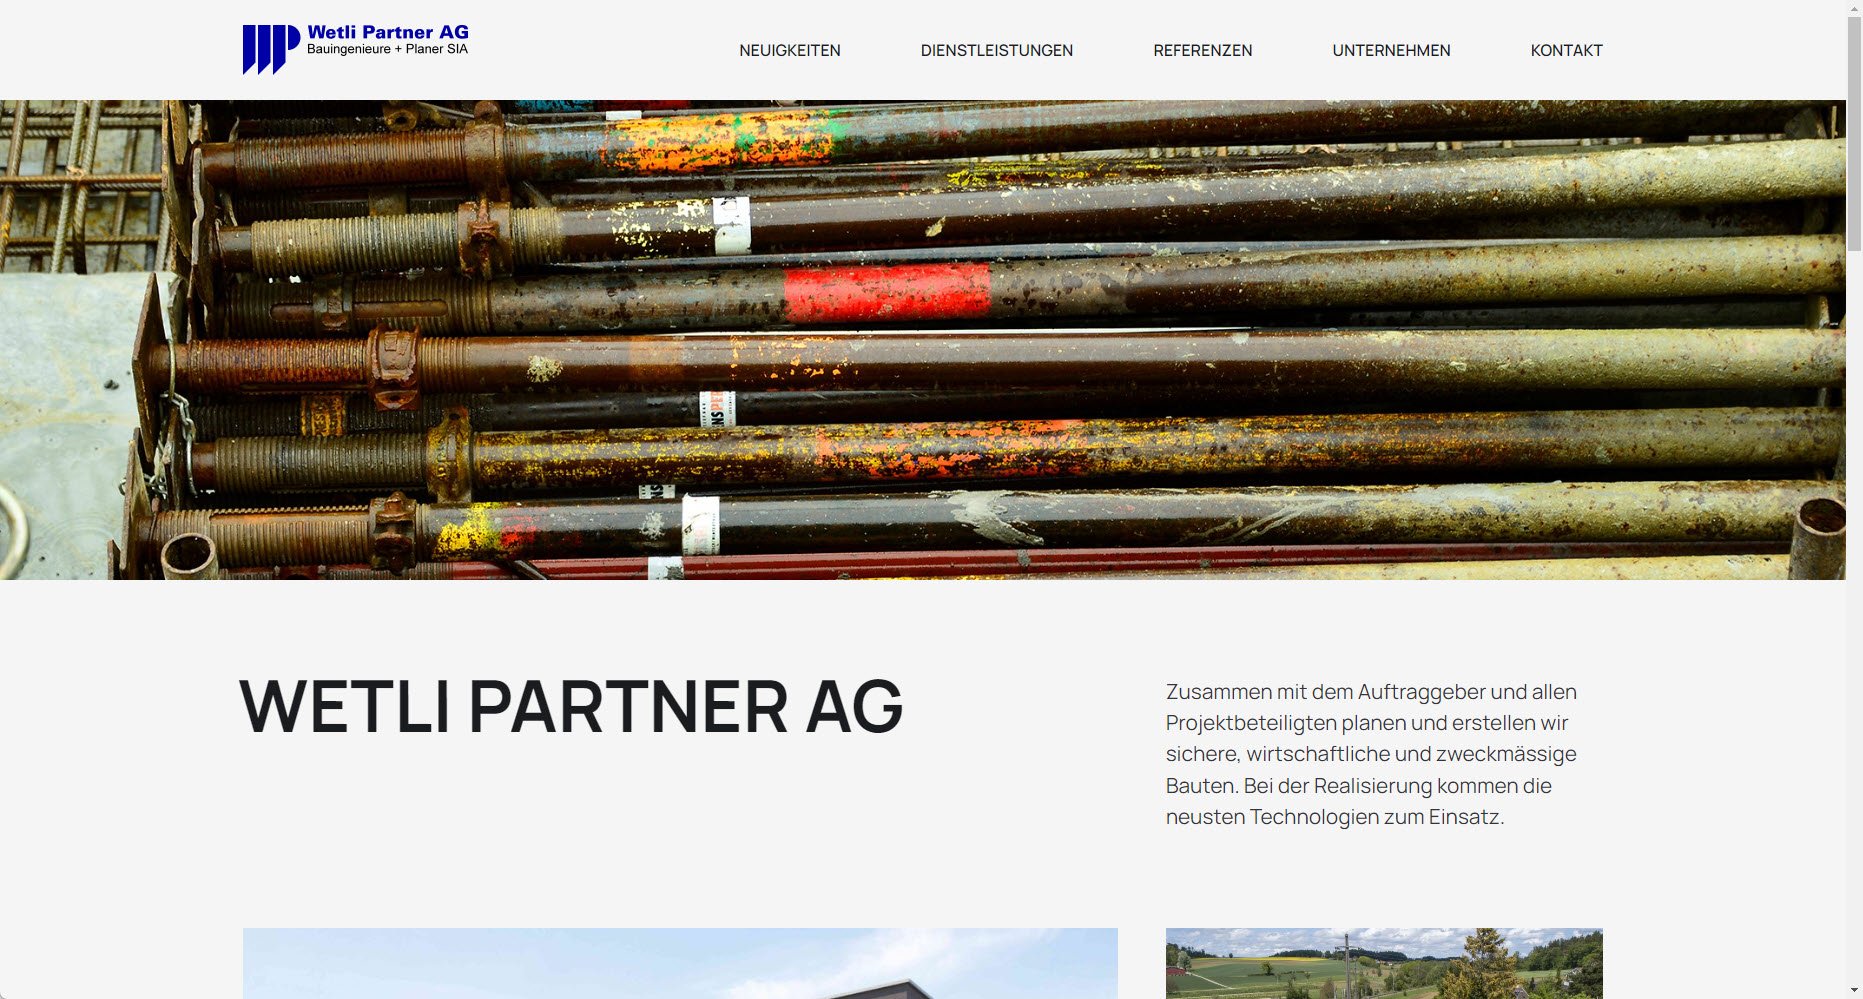 Wetli Partner AG